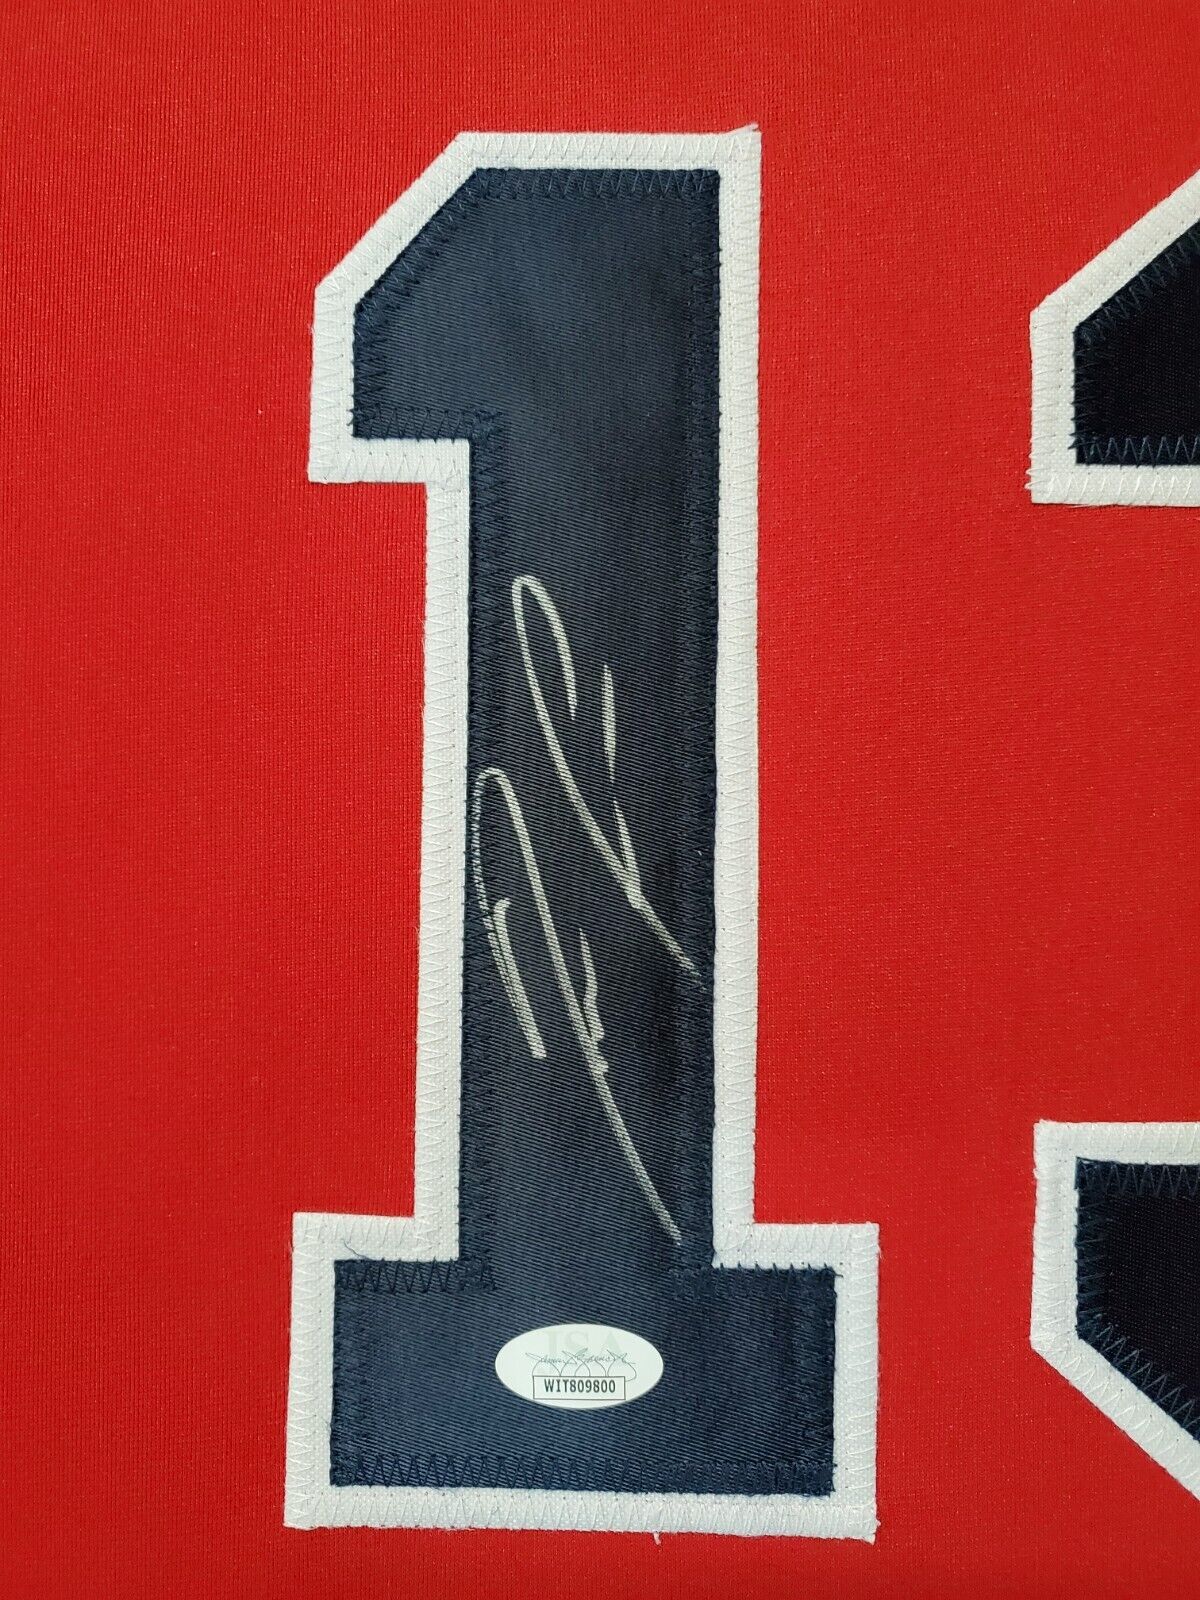 Framed Atlanta Braves Ronald Acuna Jr Autographed Signed Jersey Jsa Coa